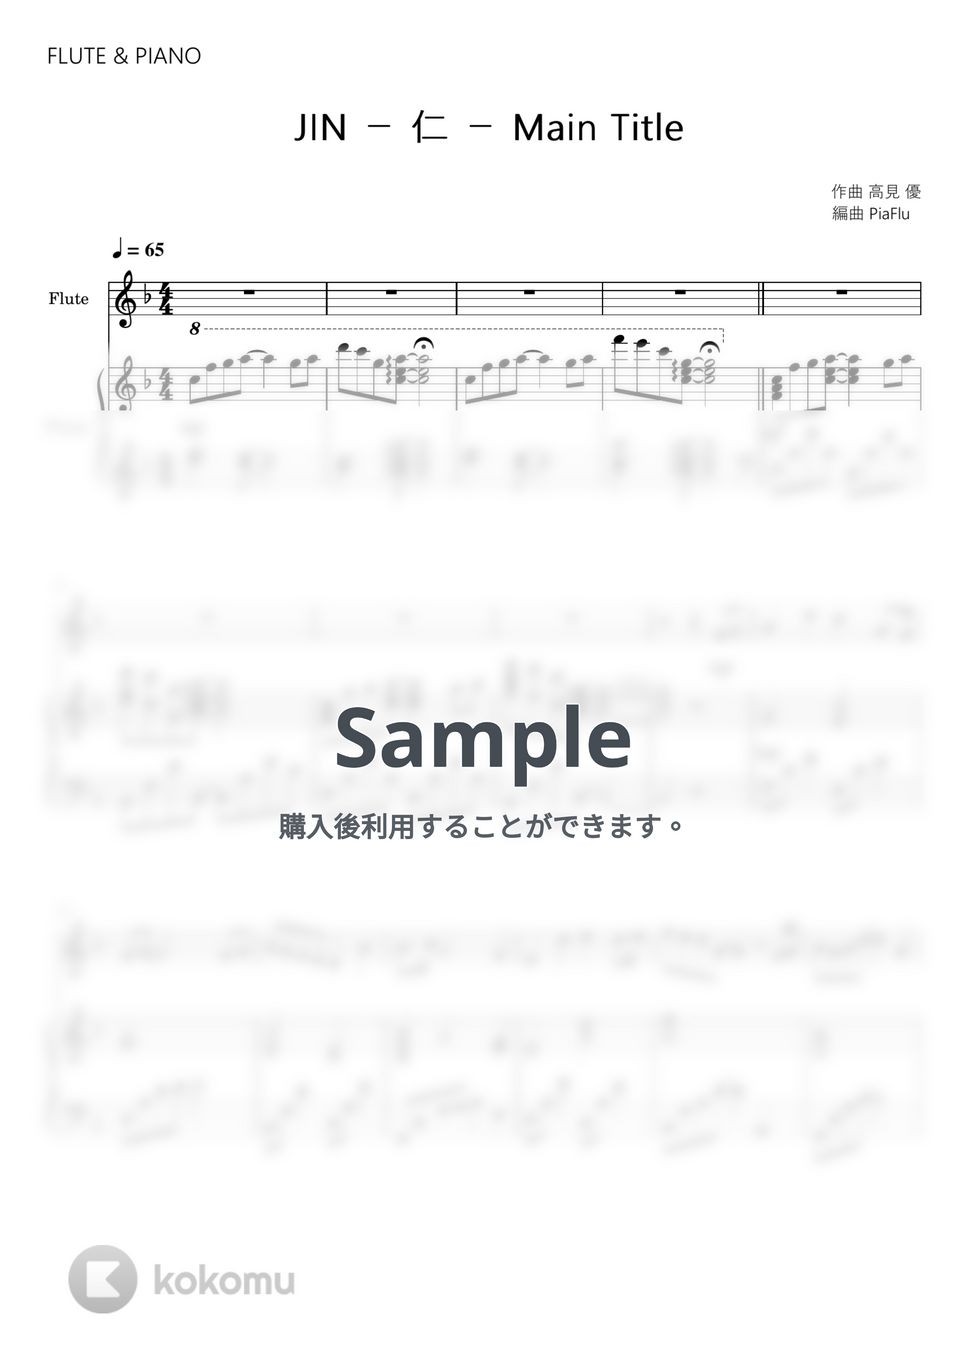 高見 優 - JIN - 仁 - Main Title (フルート＆ピアノ伴奏) by PiaFlu